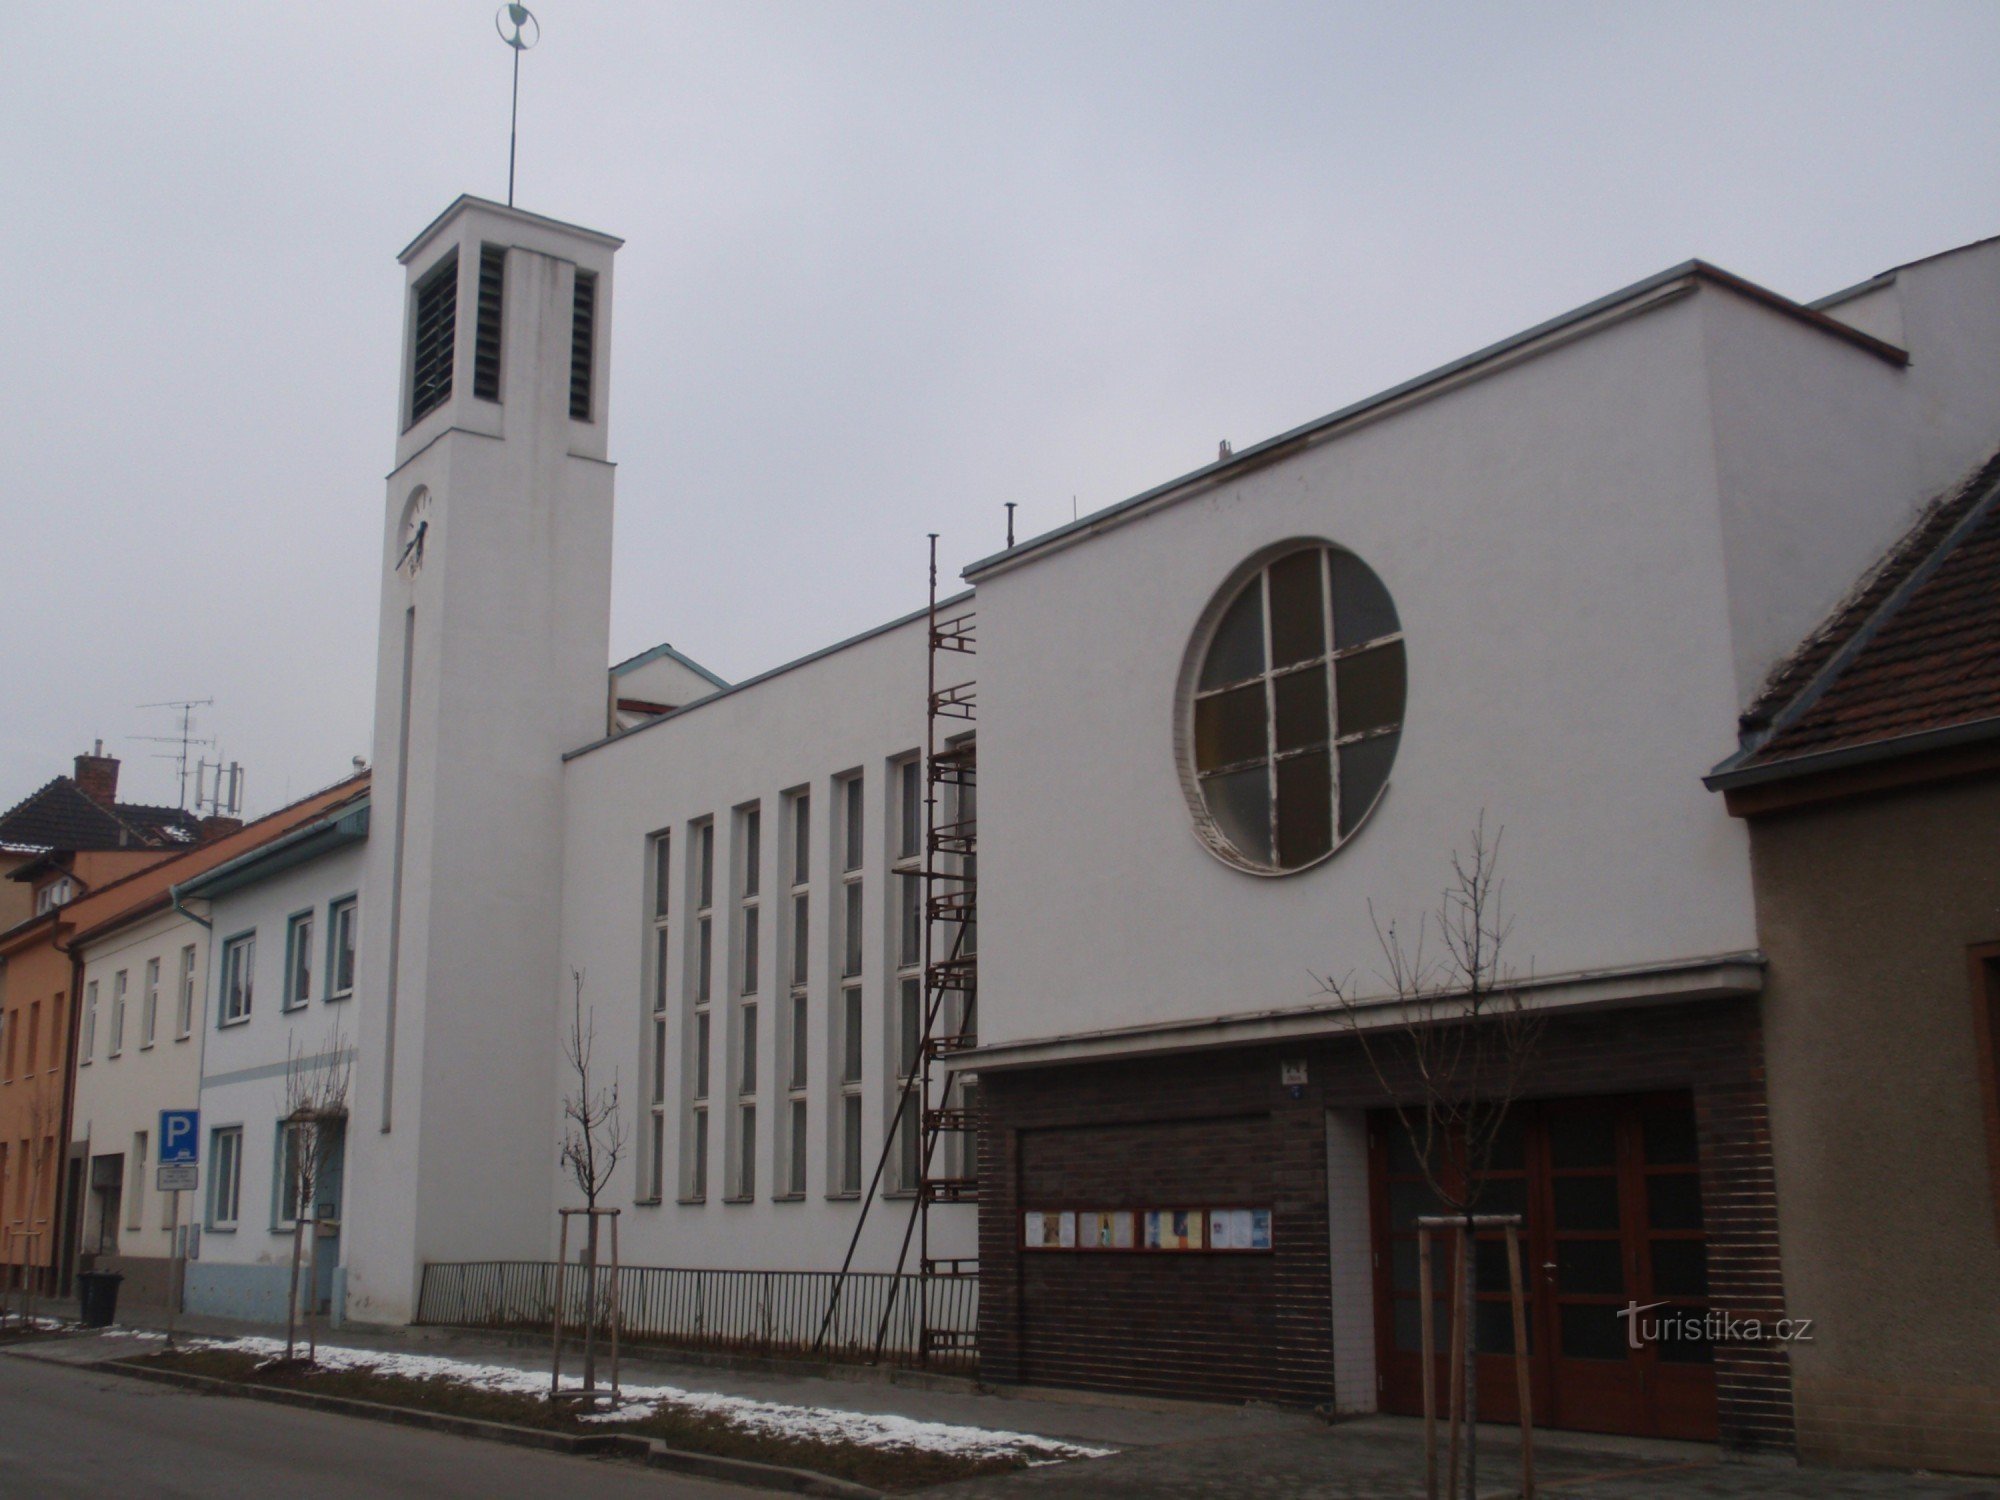 ブルノ・ジデニツェのチェコ兄弟福音教会の教会